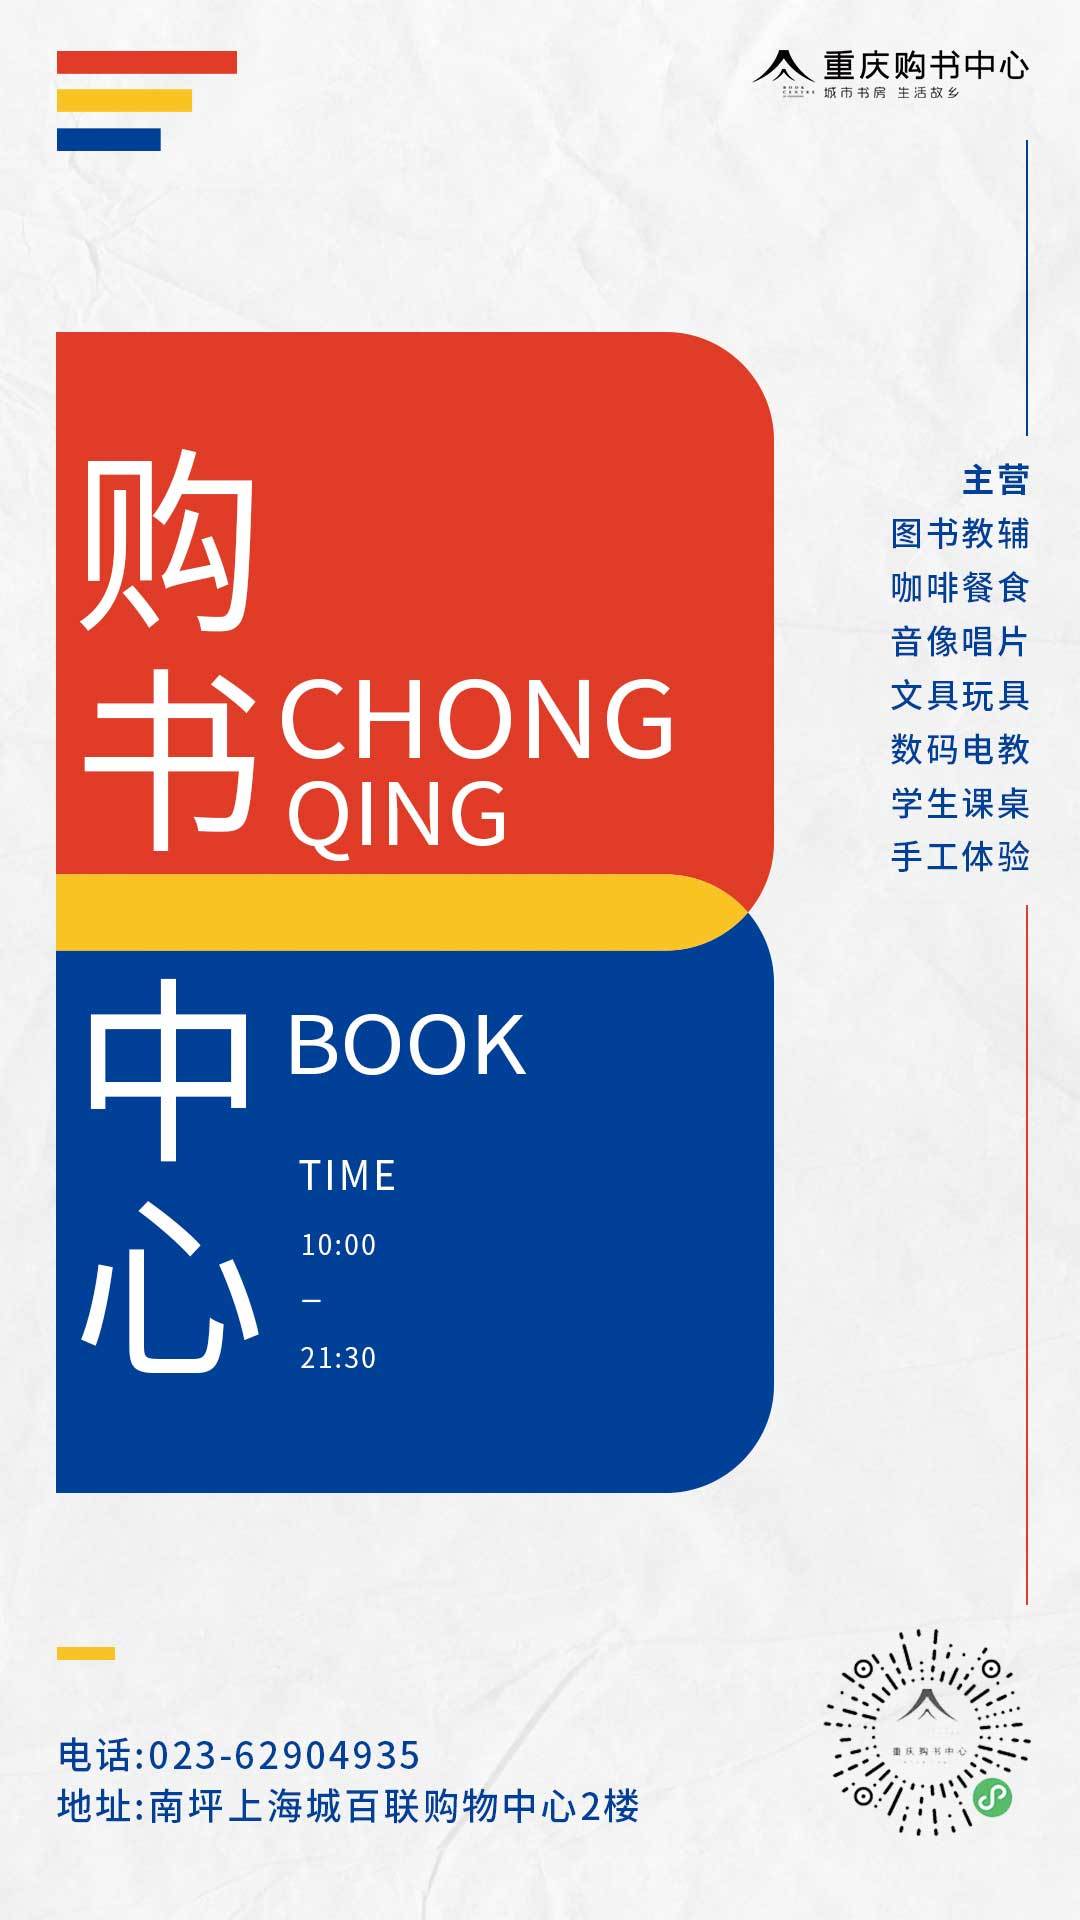 重庆公园天街重庆购书中心开业系列图图4